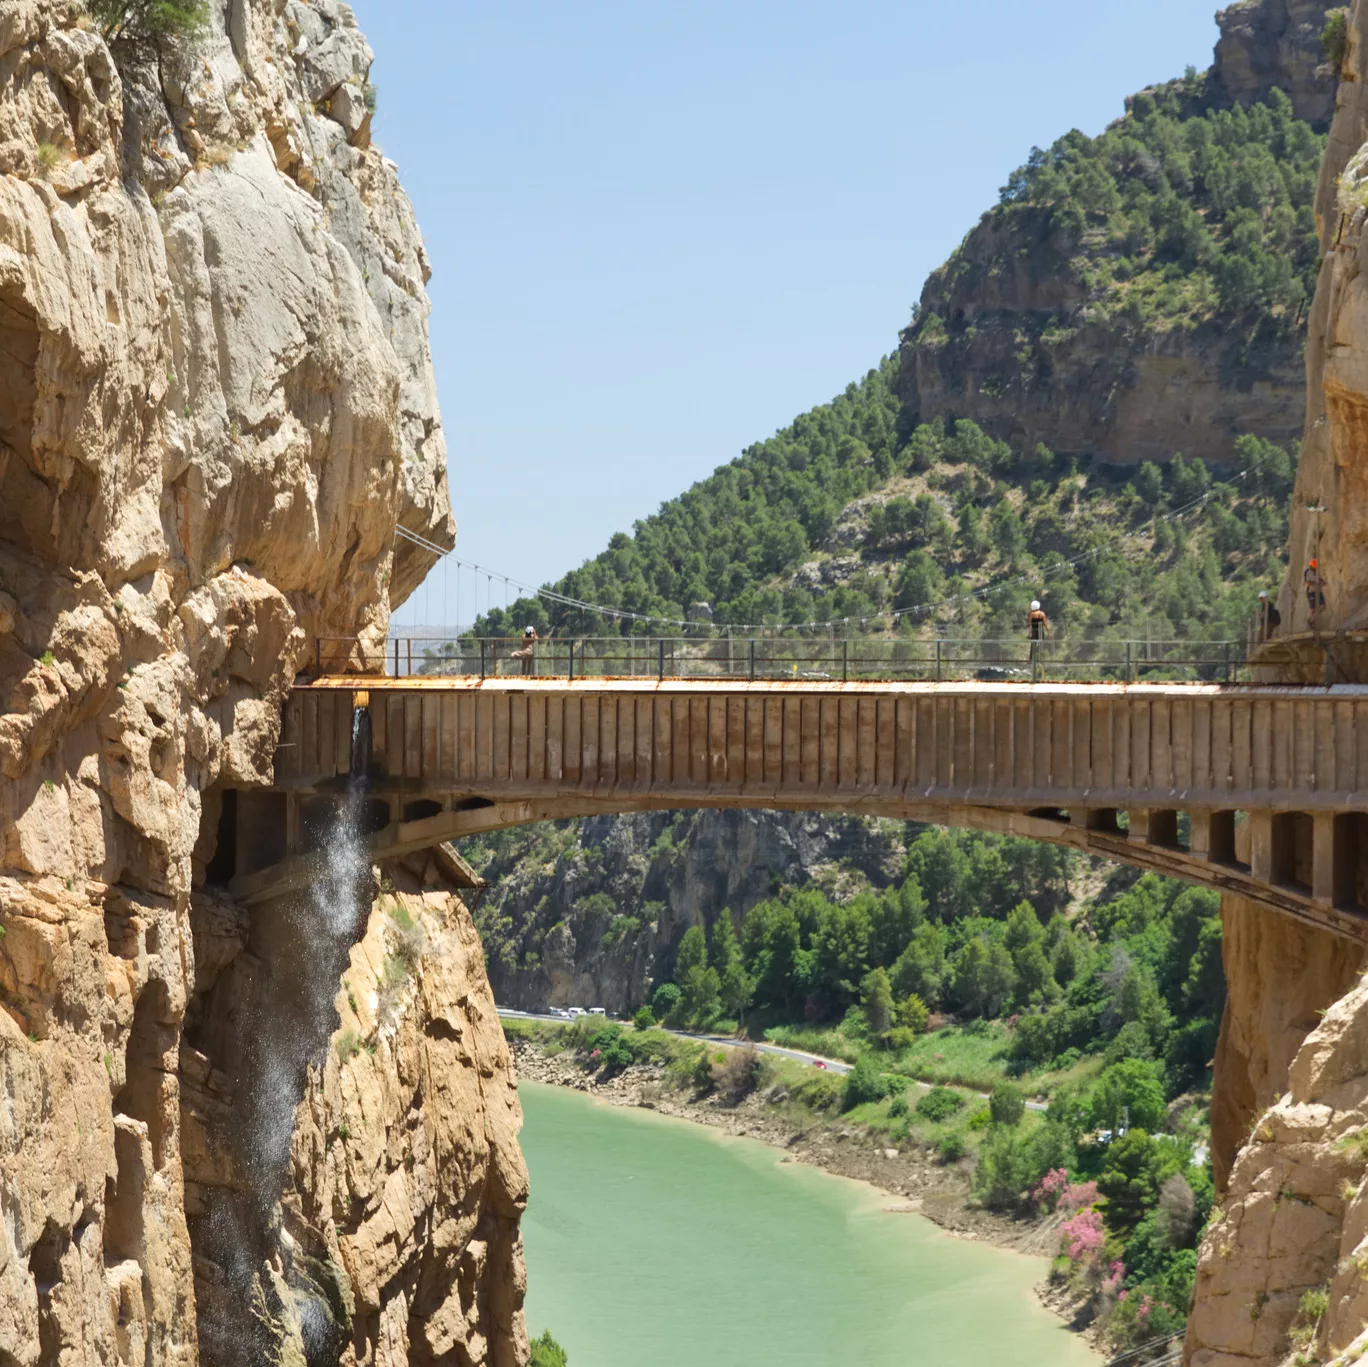 Bridge of the Caminito del Rey